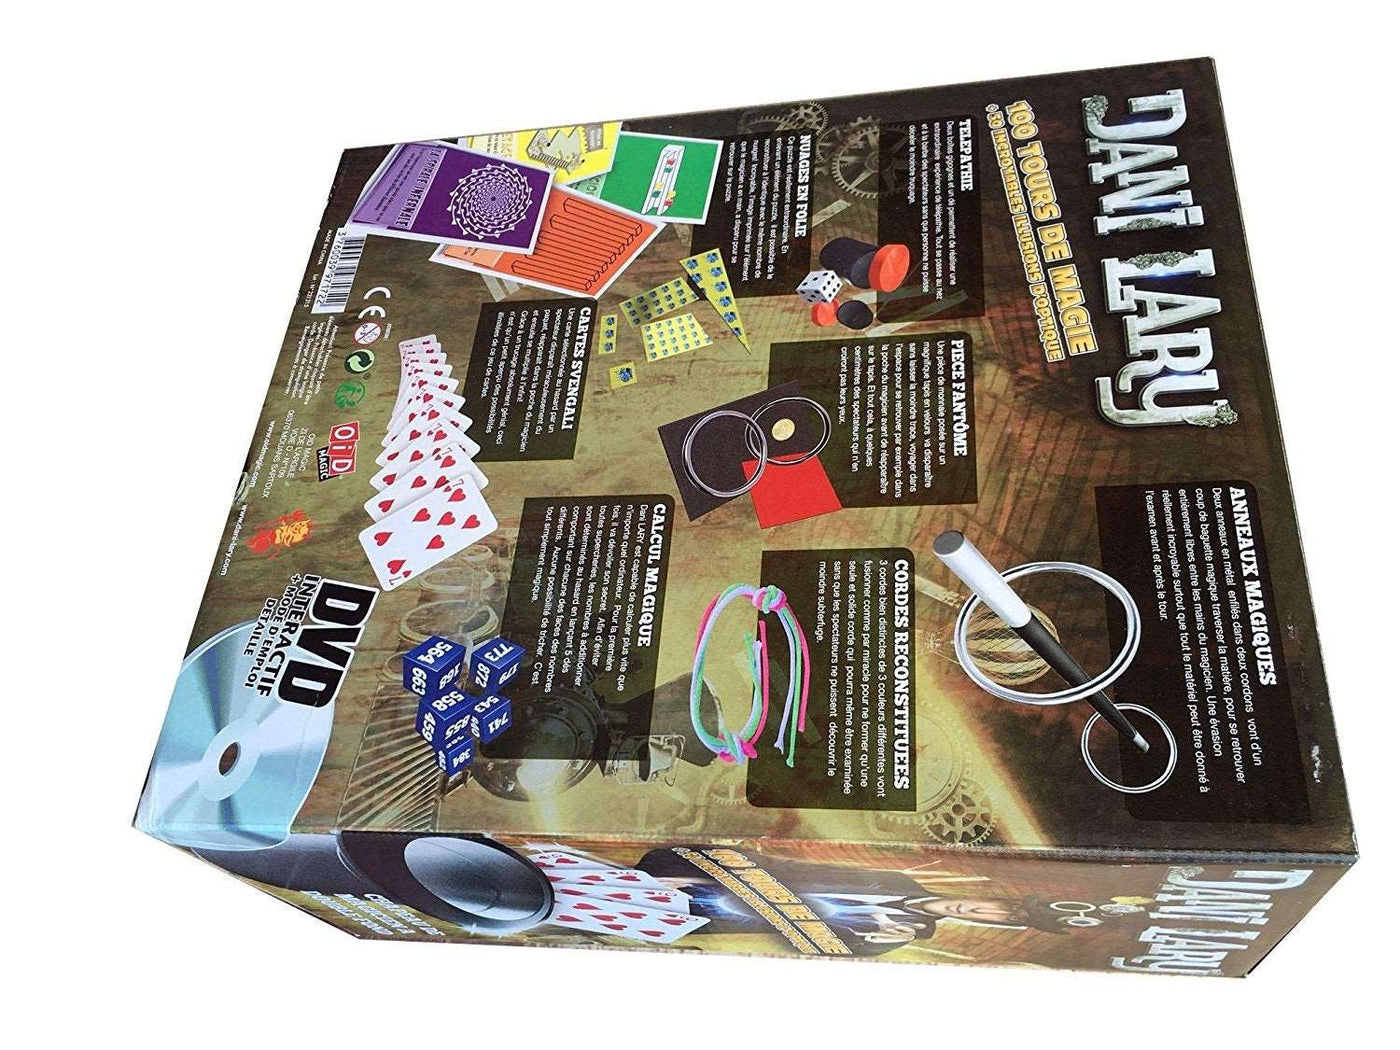 Coffret Magie - Du contenu pas-à-pas et en cadeau : 1 DVD, 1 jeu magique de  52 cartes, 1 cube magiqu